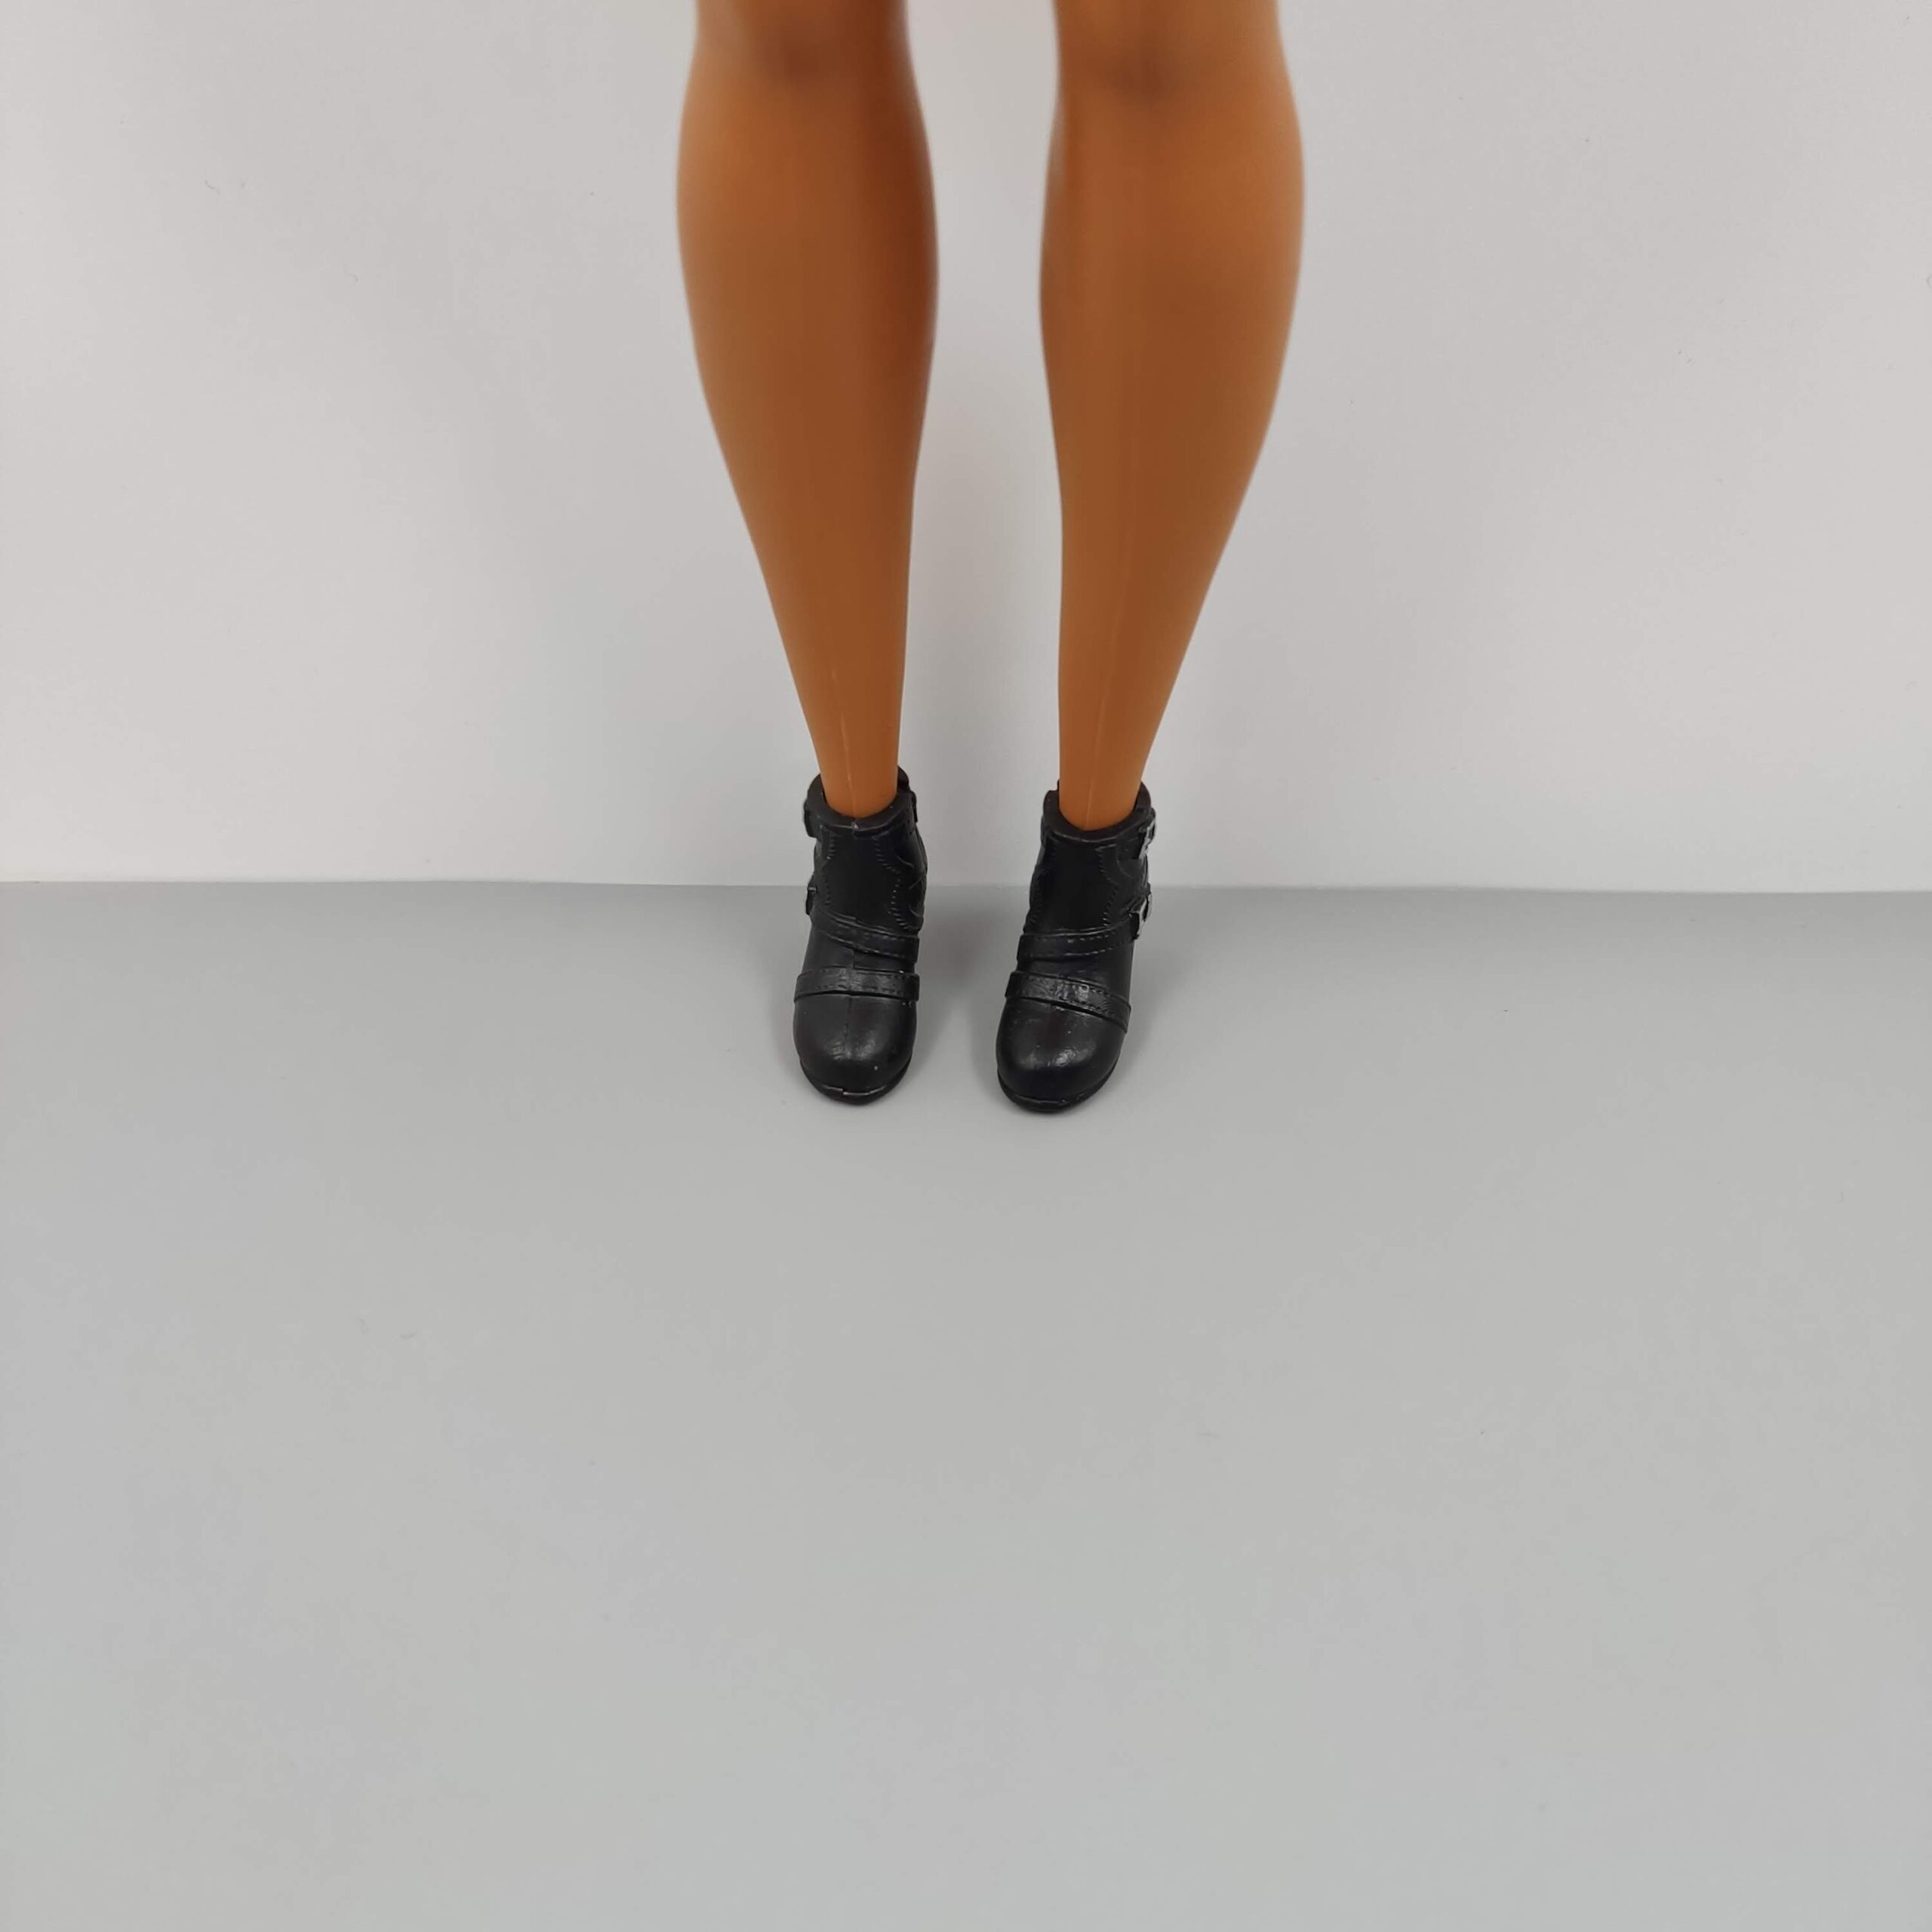 Doll Style: Designer Shoe Dupes – Brunbellebarbie